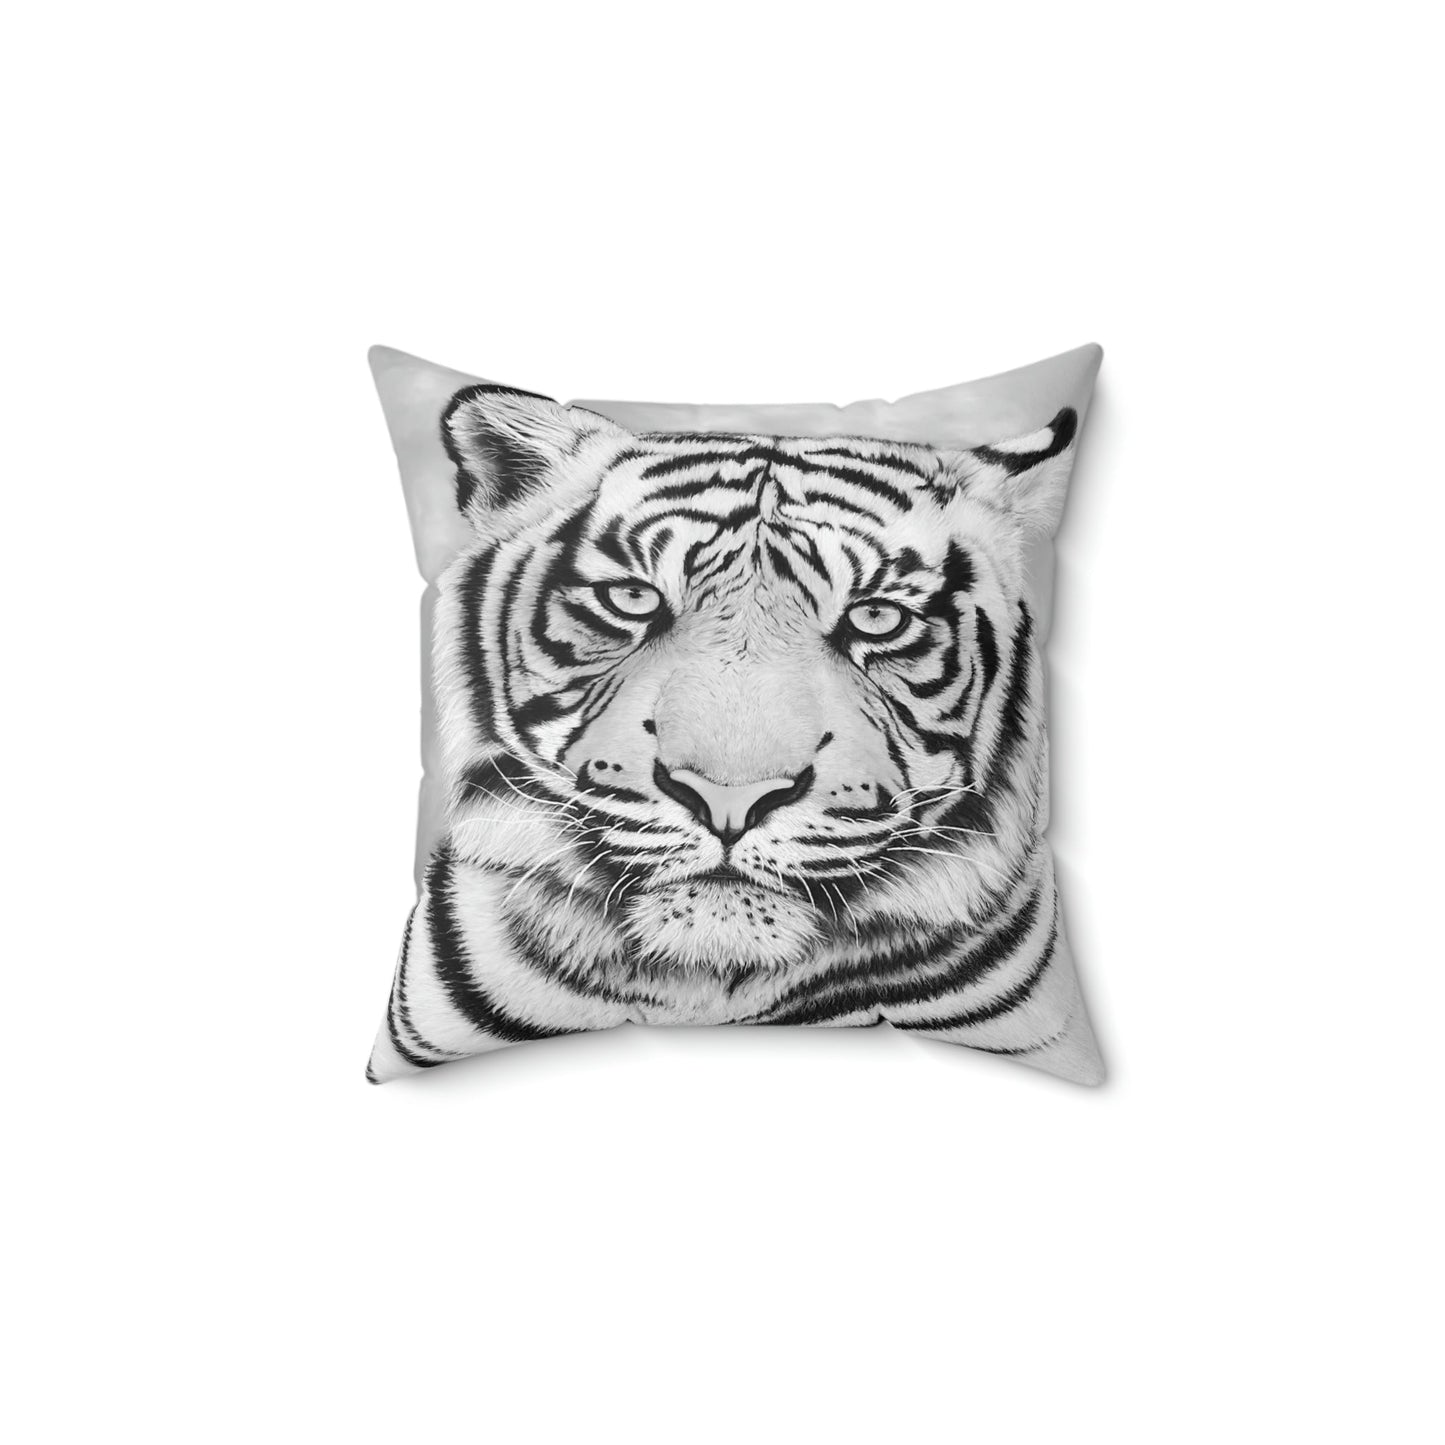 Spun Polyester Throw Pillow - "MONOCHROME TIGER"